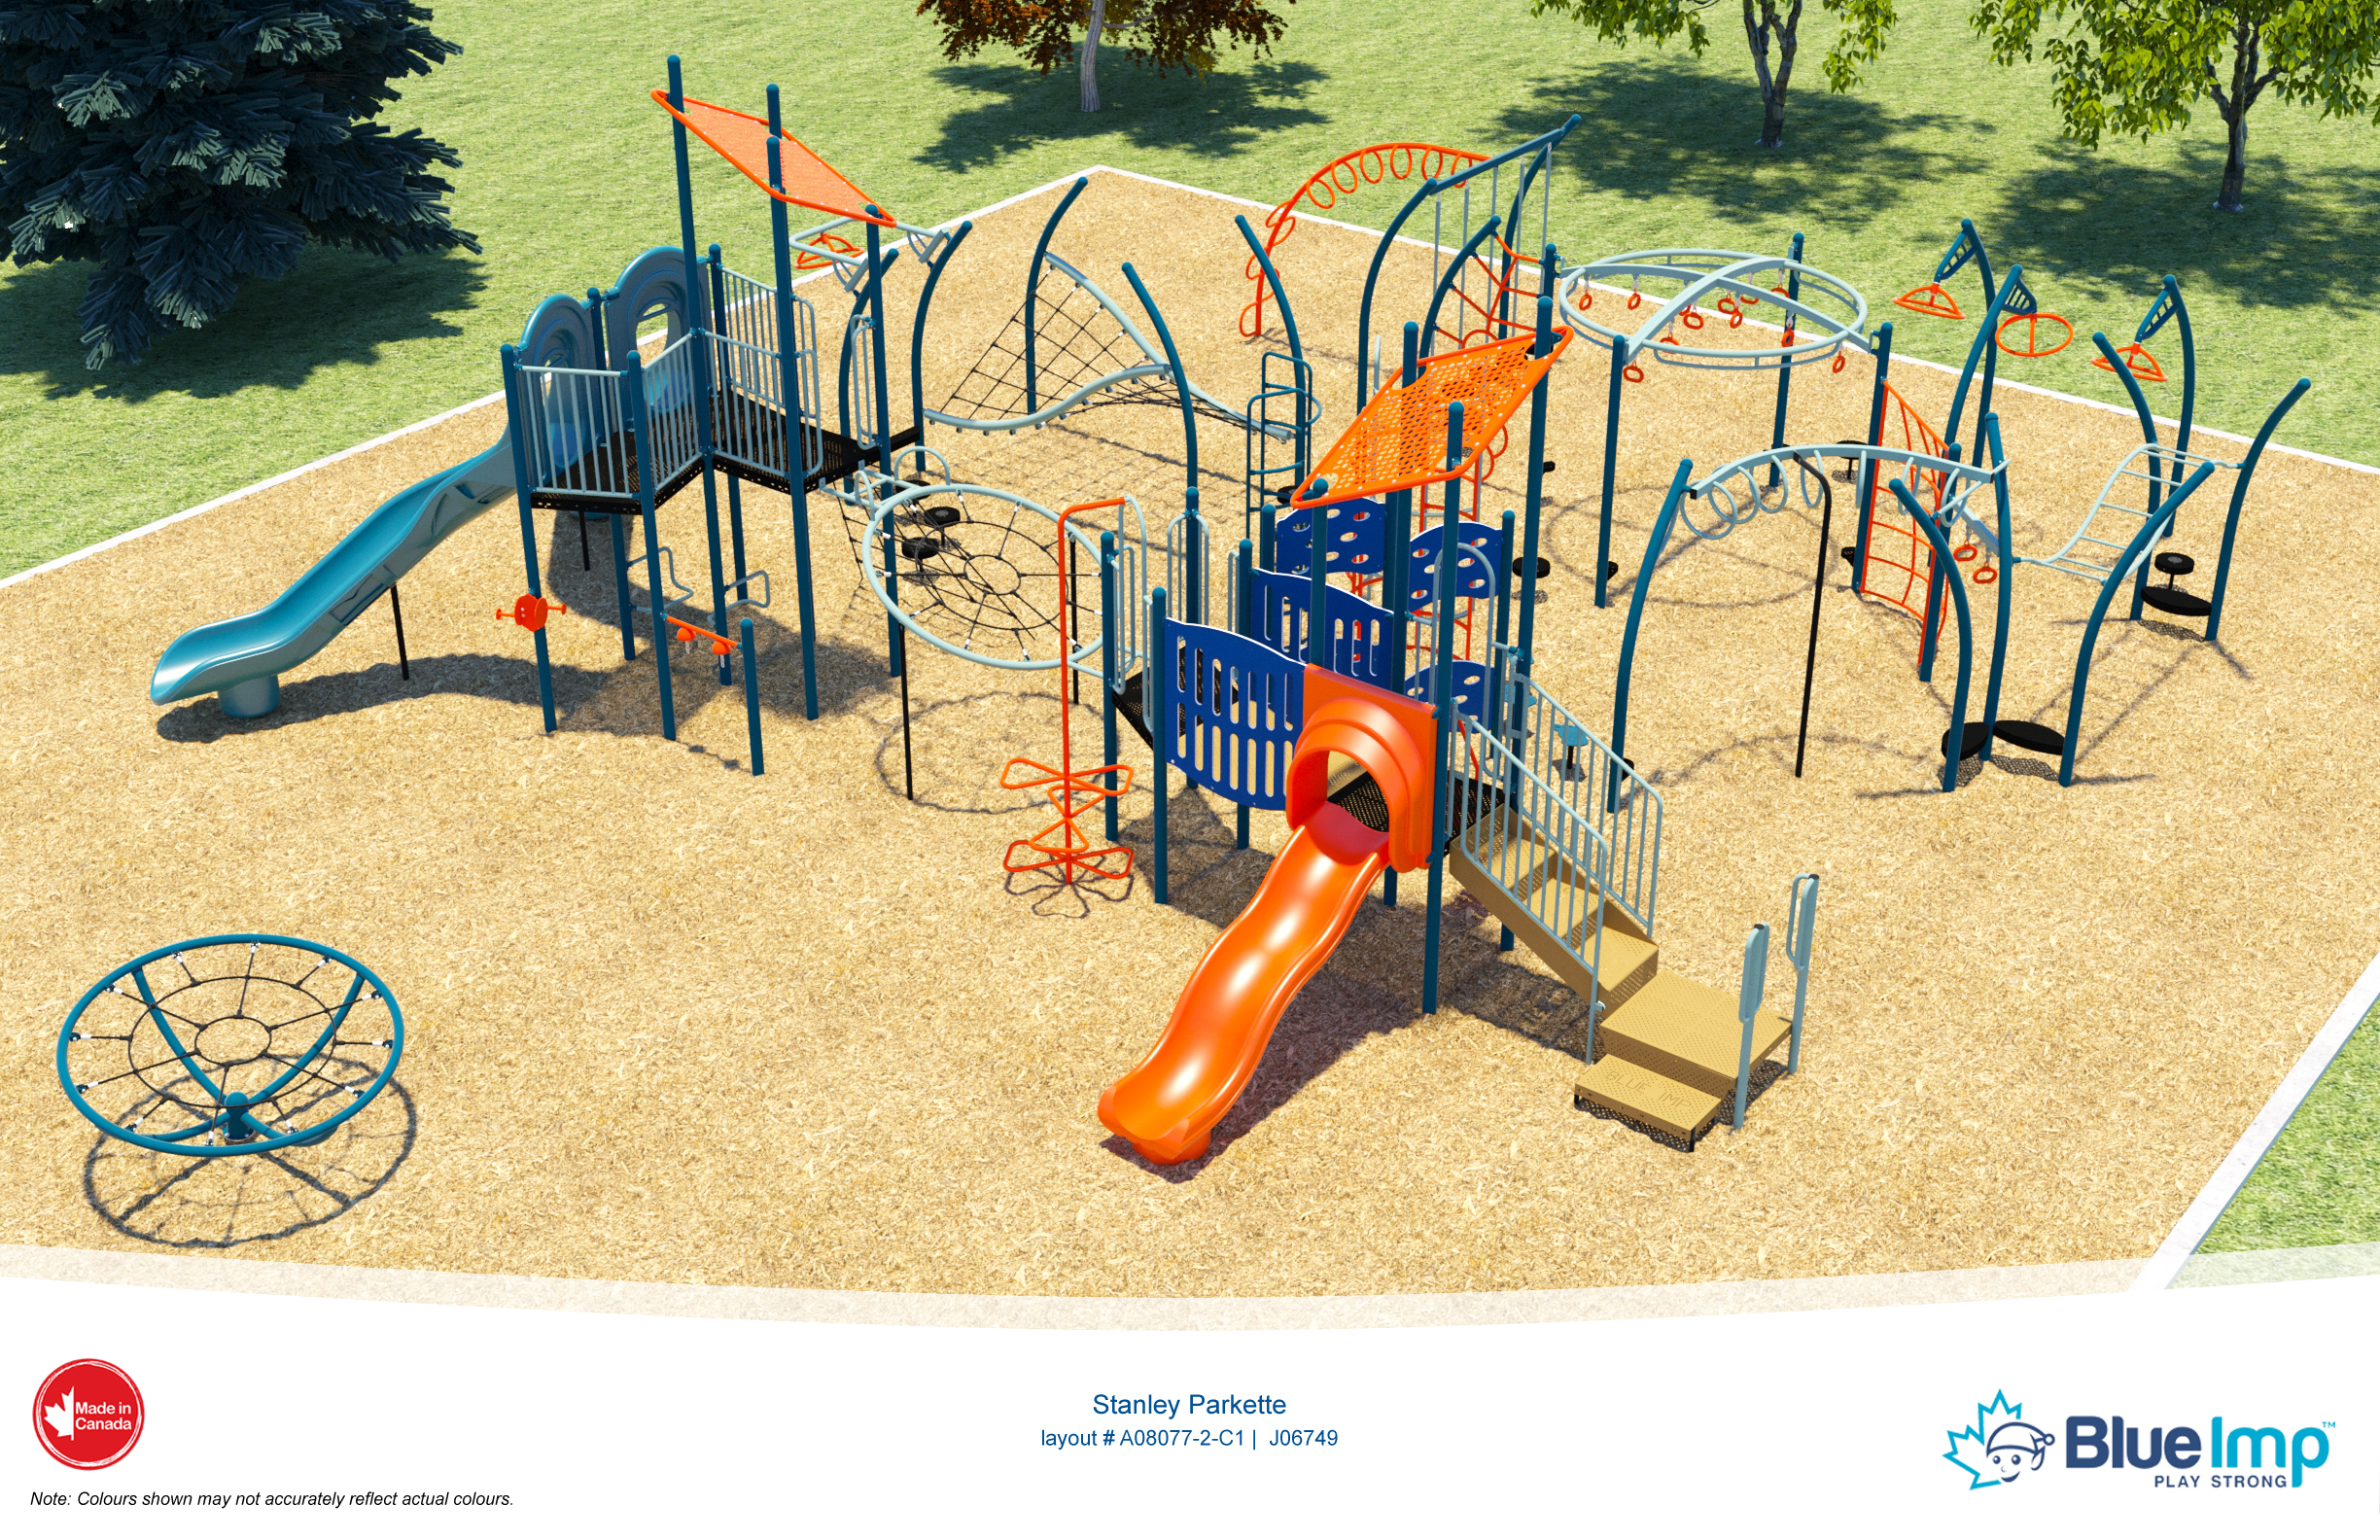 Stanley Parkette Design Concept, shows playground equipment